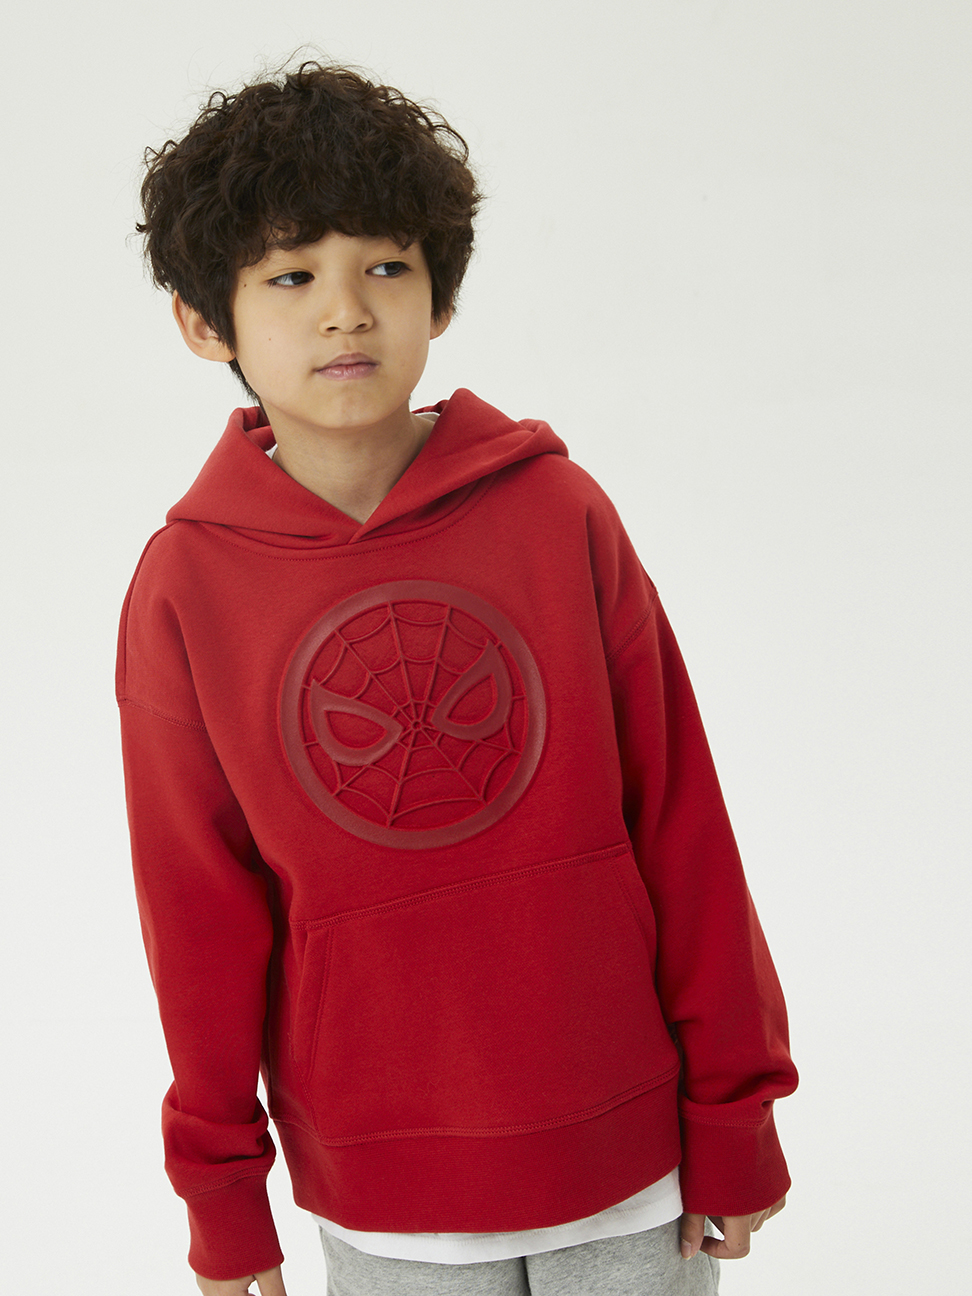 男童|Gap x Marvel漫威聯名 連帽休閒上衣-紅色